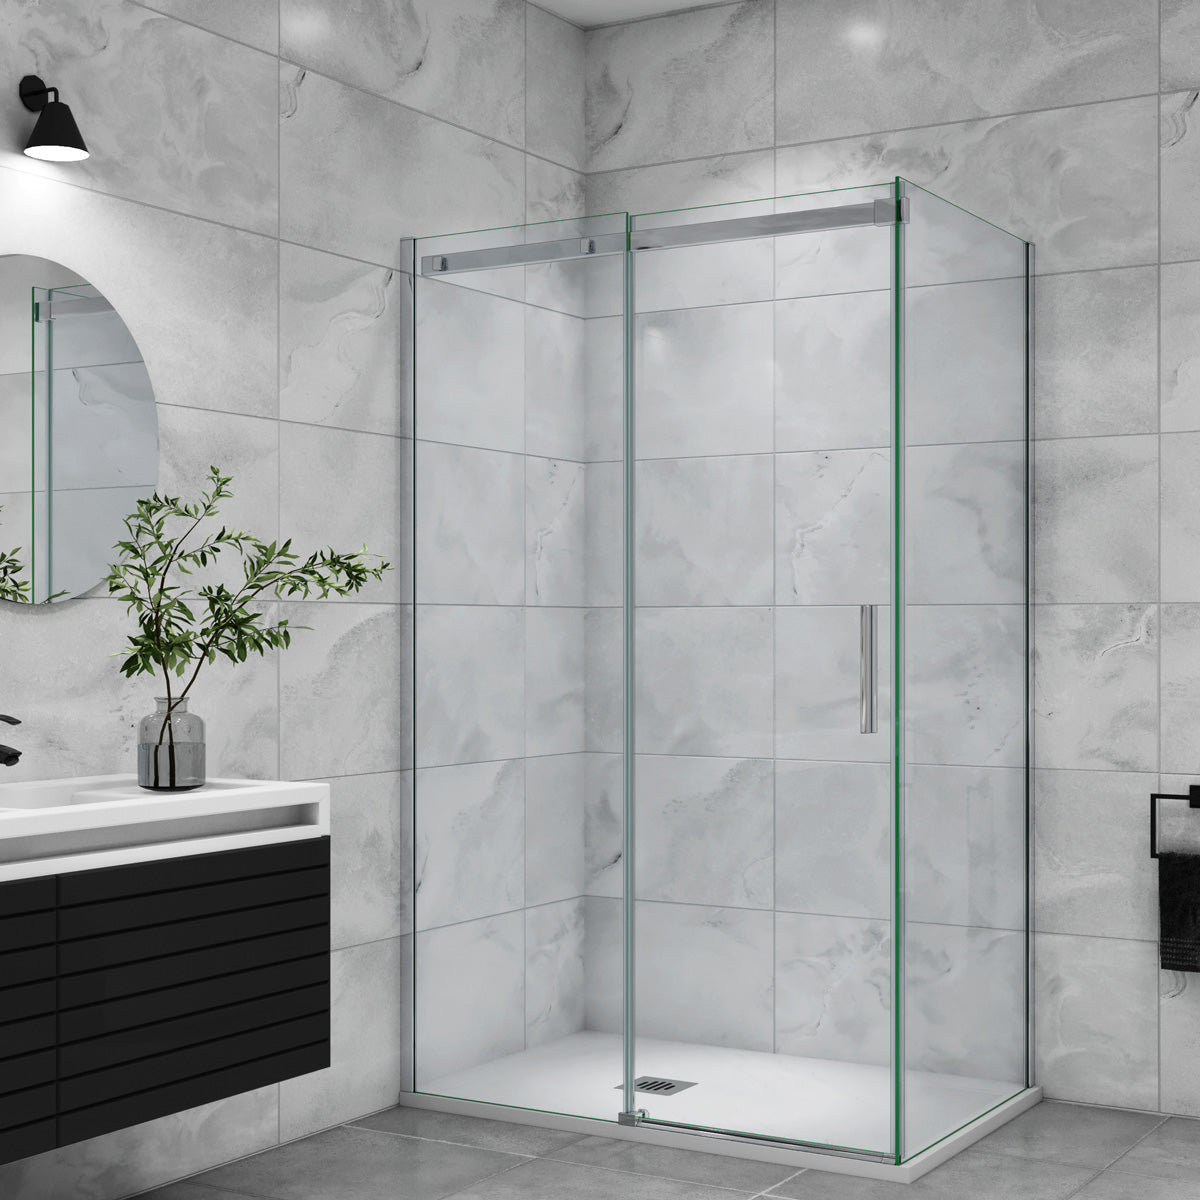 Duschtür+Seitenwand Duschkabine 150x90 cm Glasstärke 6mm Schiebetür Dusche Duschabtrennung